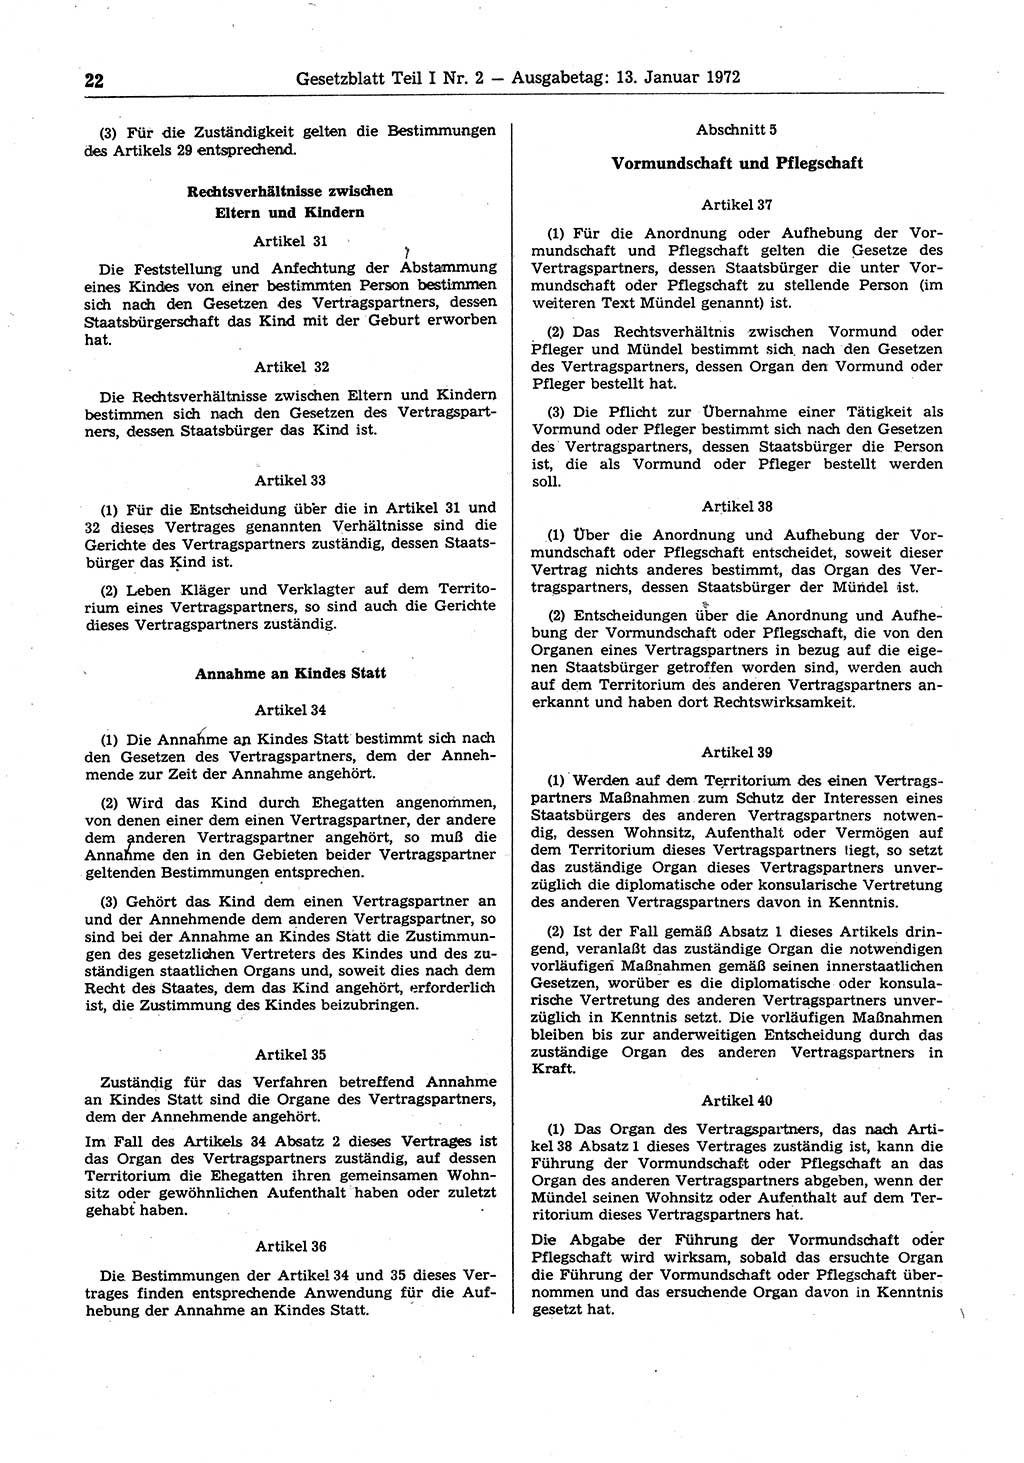 Gesetzblatt (GBl.) der Deutschen Demokratischen Republik (DDR) Teil Ⅰ 1972, Seite 22 (GBl. DDR Ⅰ 1972, S. 22)